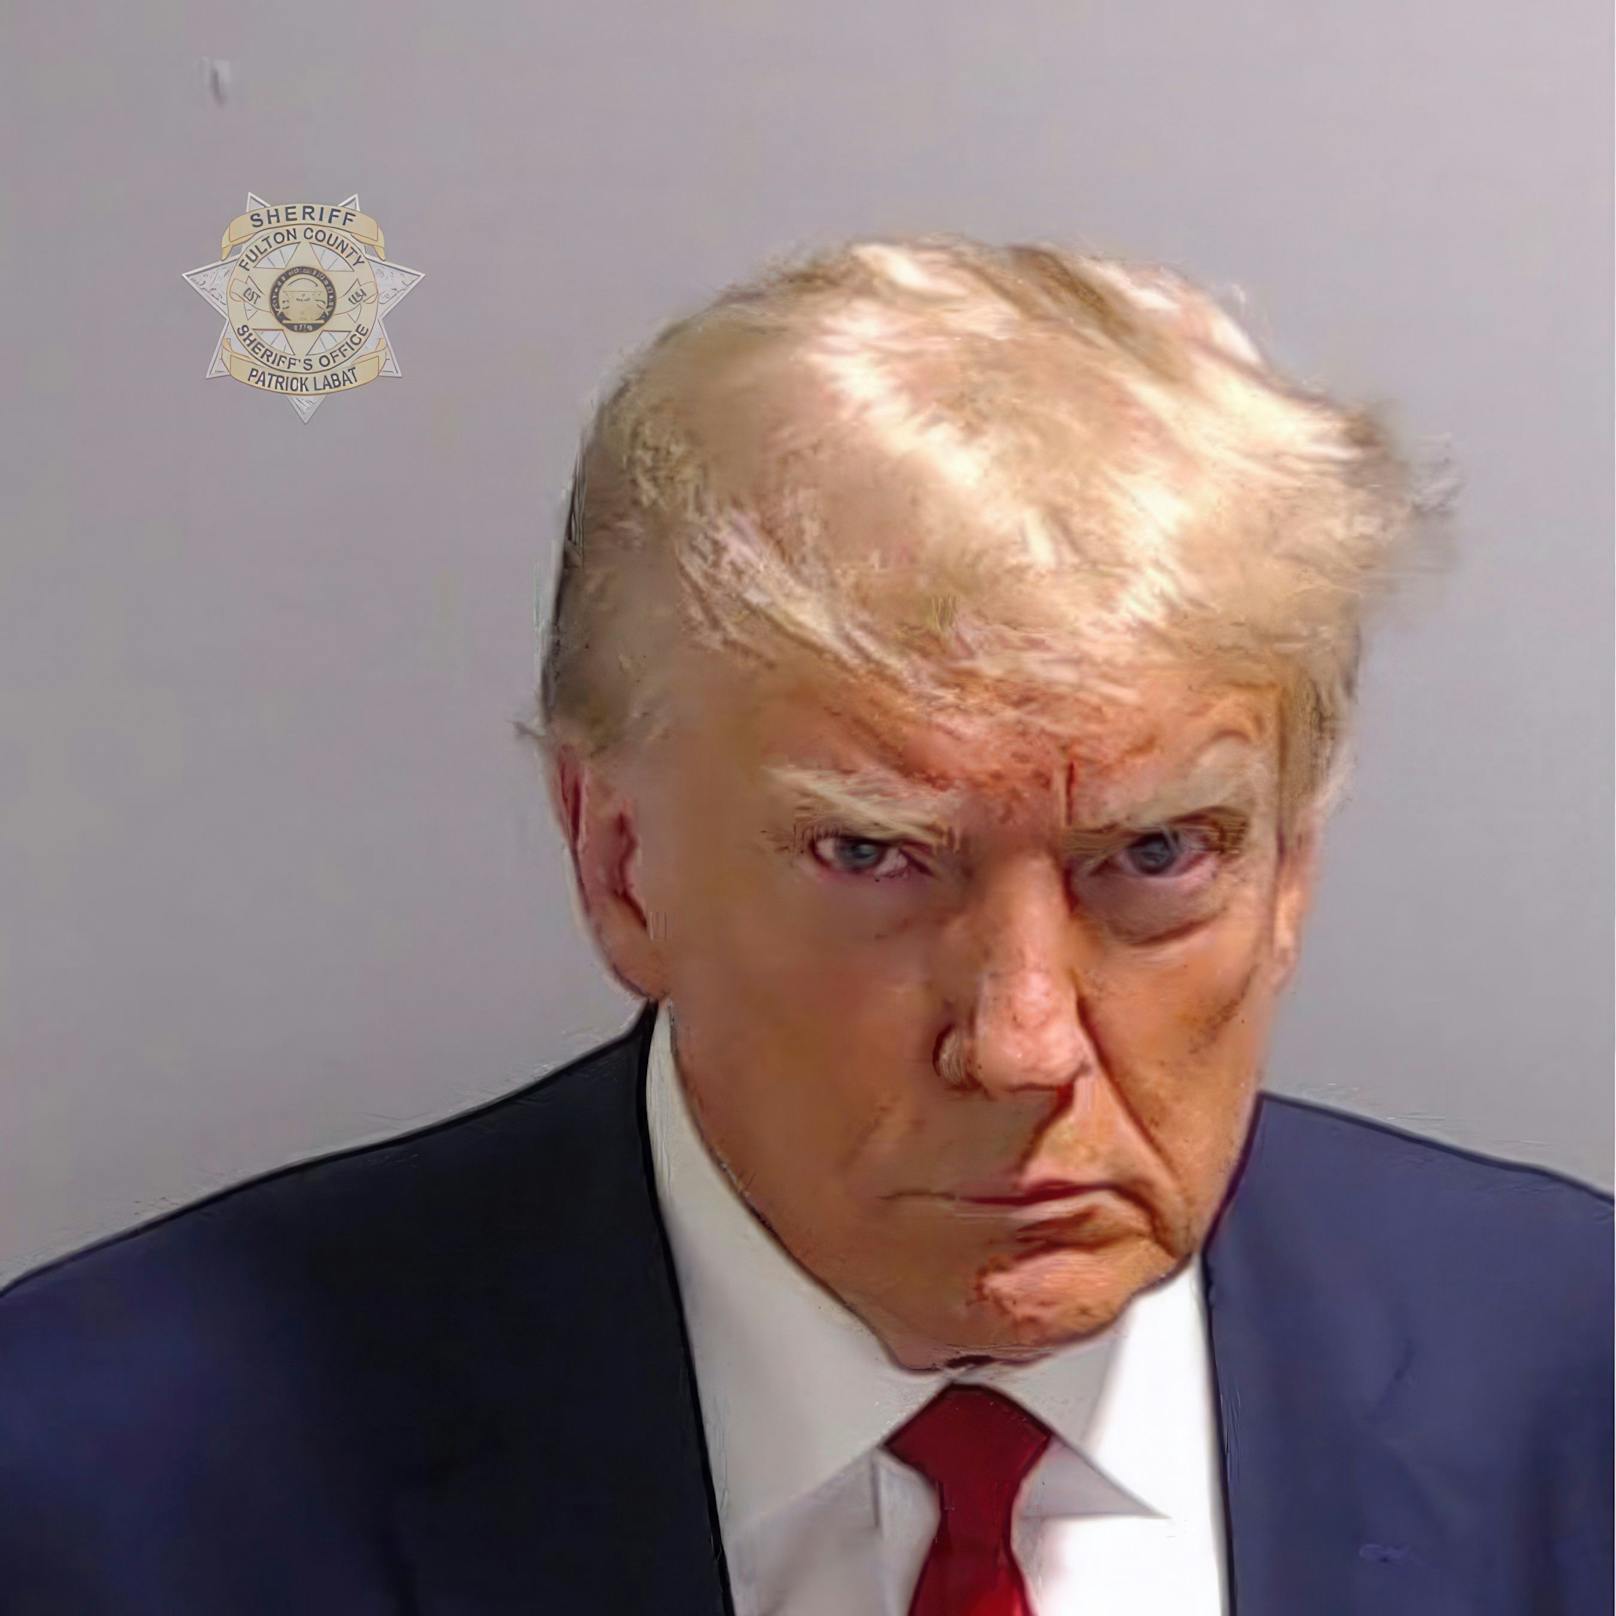 Mit diesem Polizeifoto meldete sich Ex-US-Präsident Donald Trump zurück auf X (Twitter). 